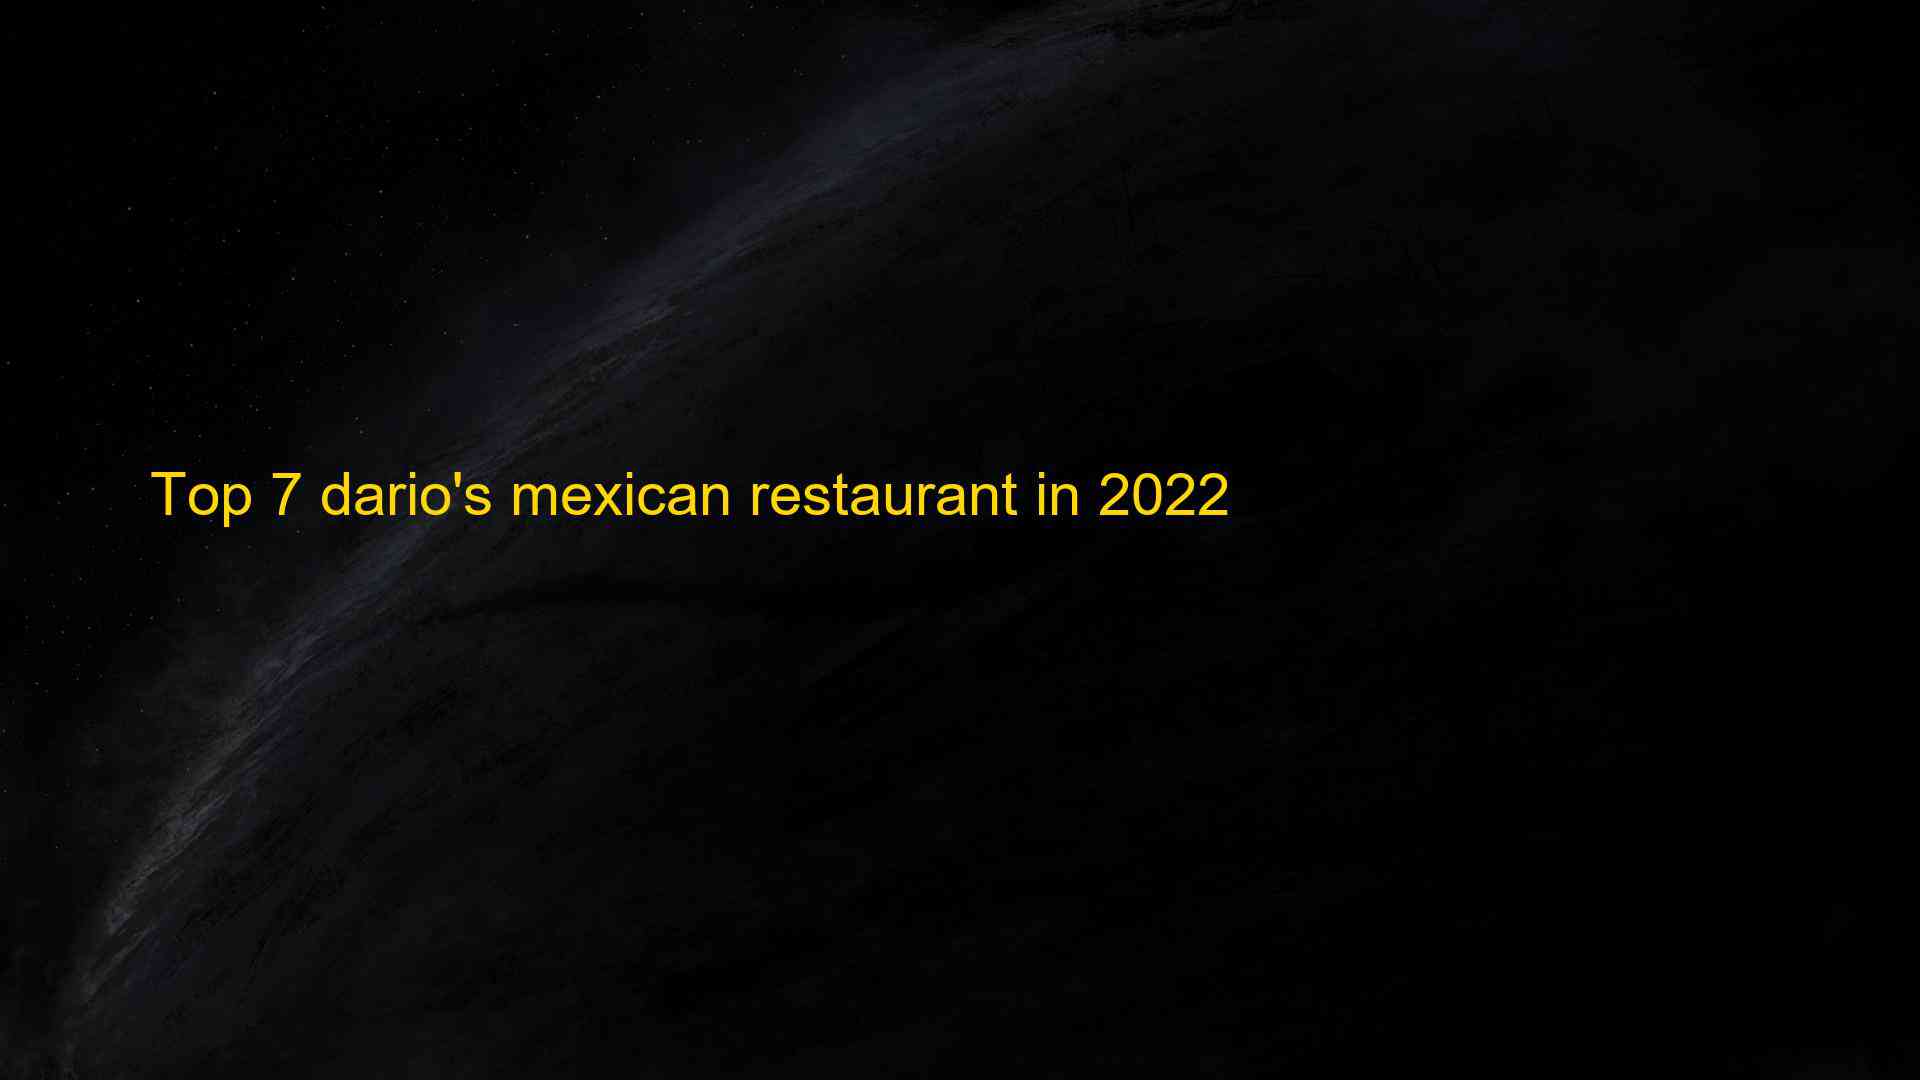 Top 7 darios mexican restaurant in 2022 1662832622